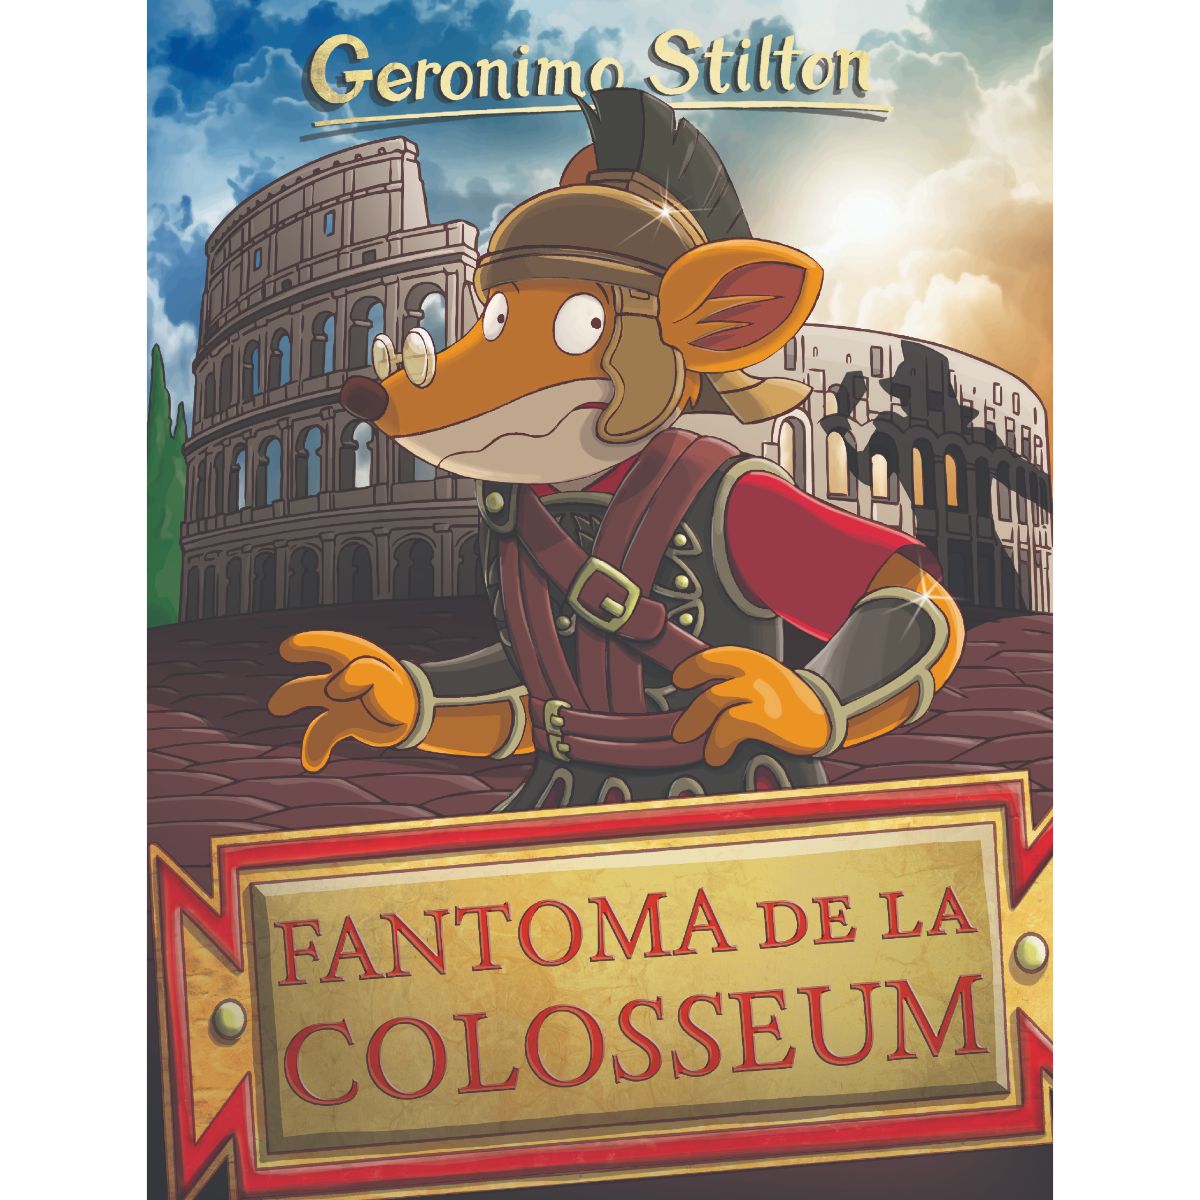 Fantoma de la Colosseum, Geronimo Stilton